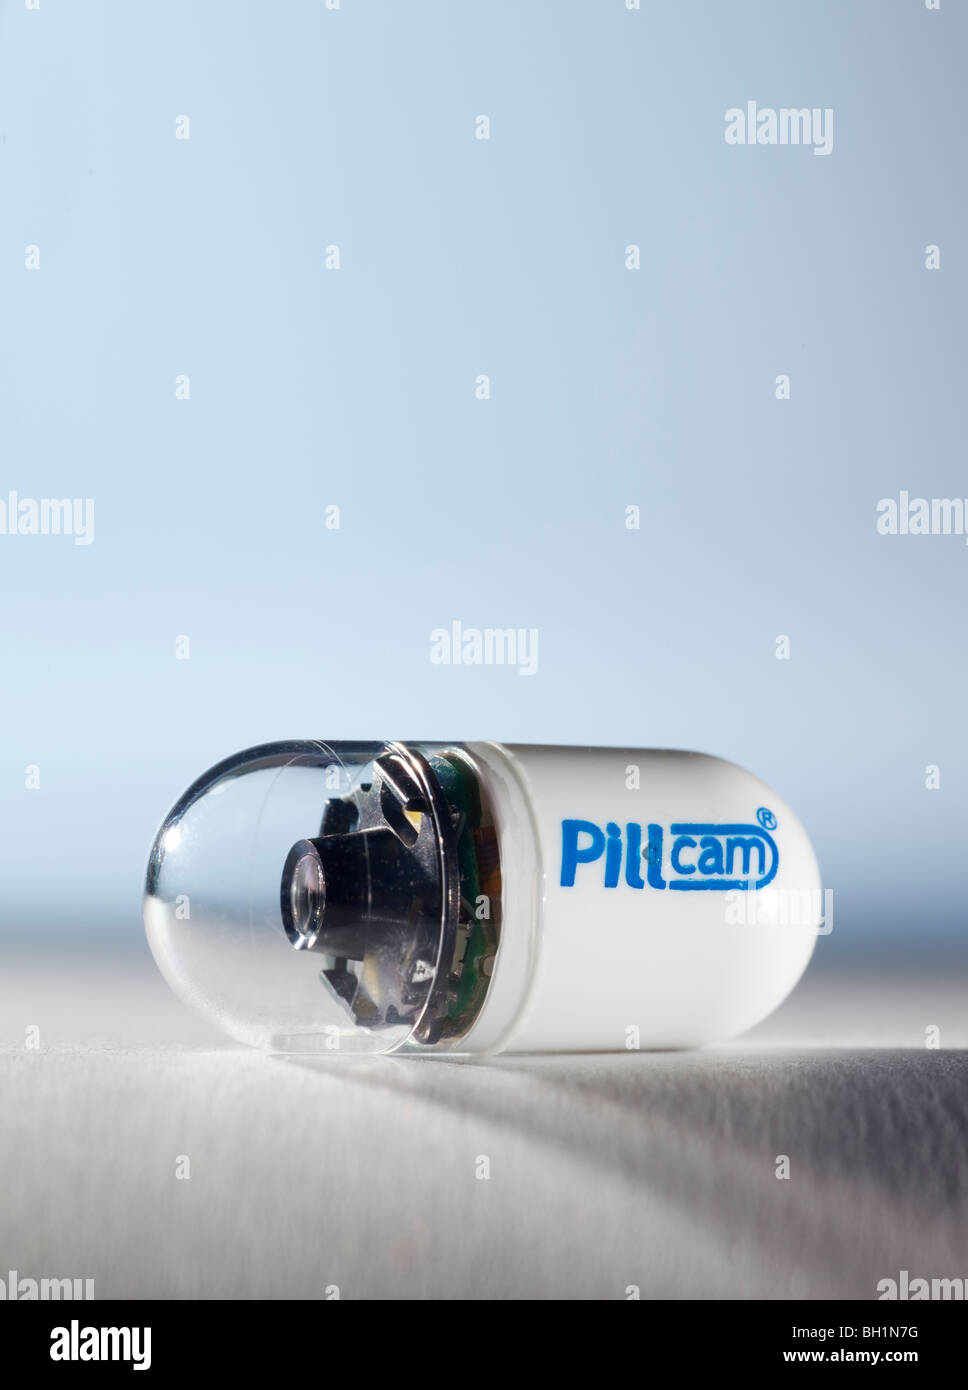 Pillcam Kapsel Endoskopie miniatur Kamera für medizinische Zwecke Stockfoto